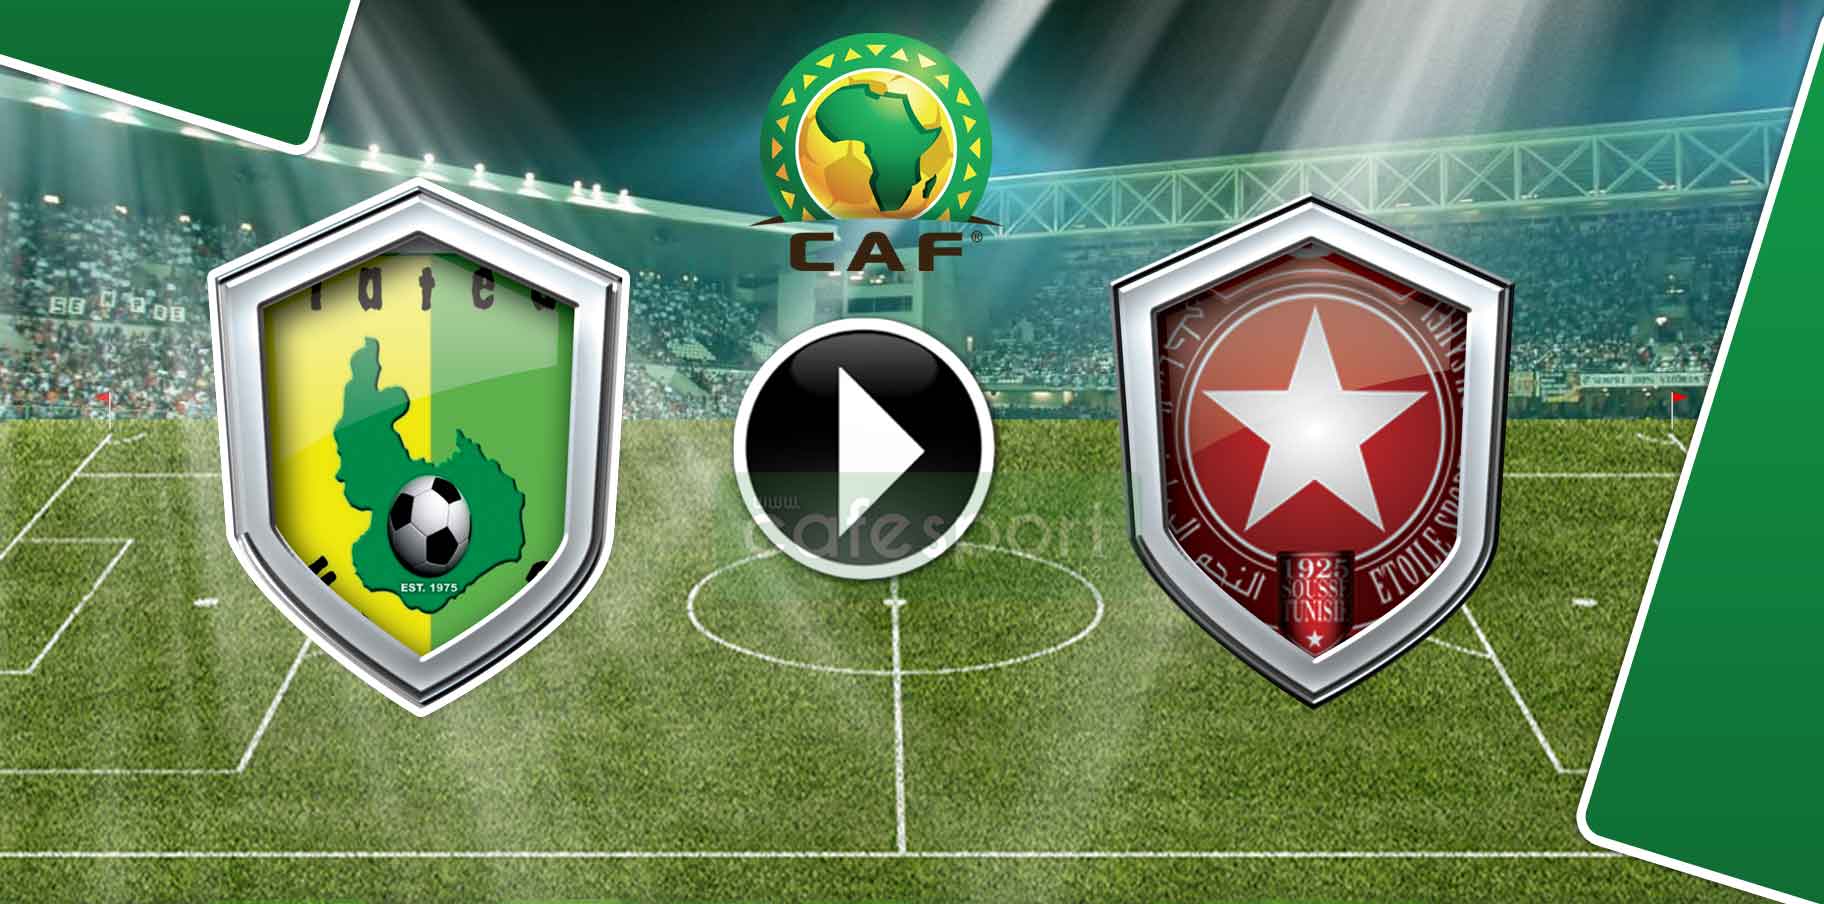 بالفيديو ملخص مباراة بلاتو يونايتد النيجيري - النجم الساحلي